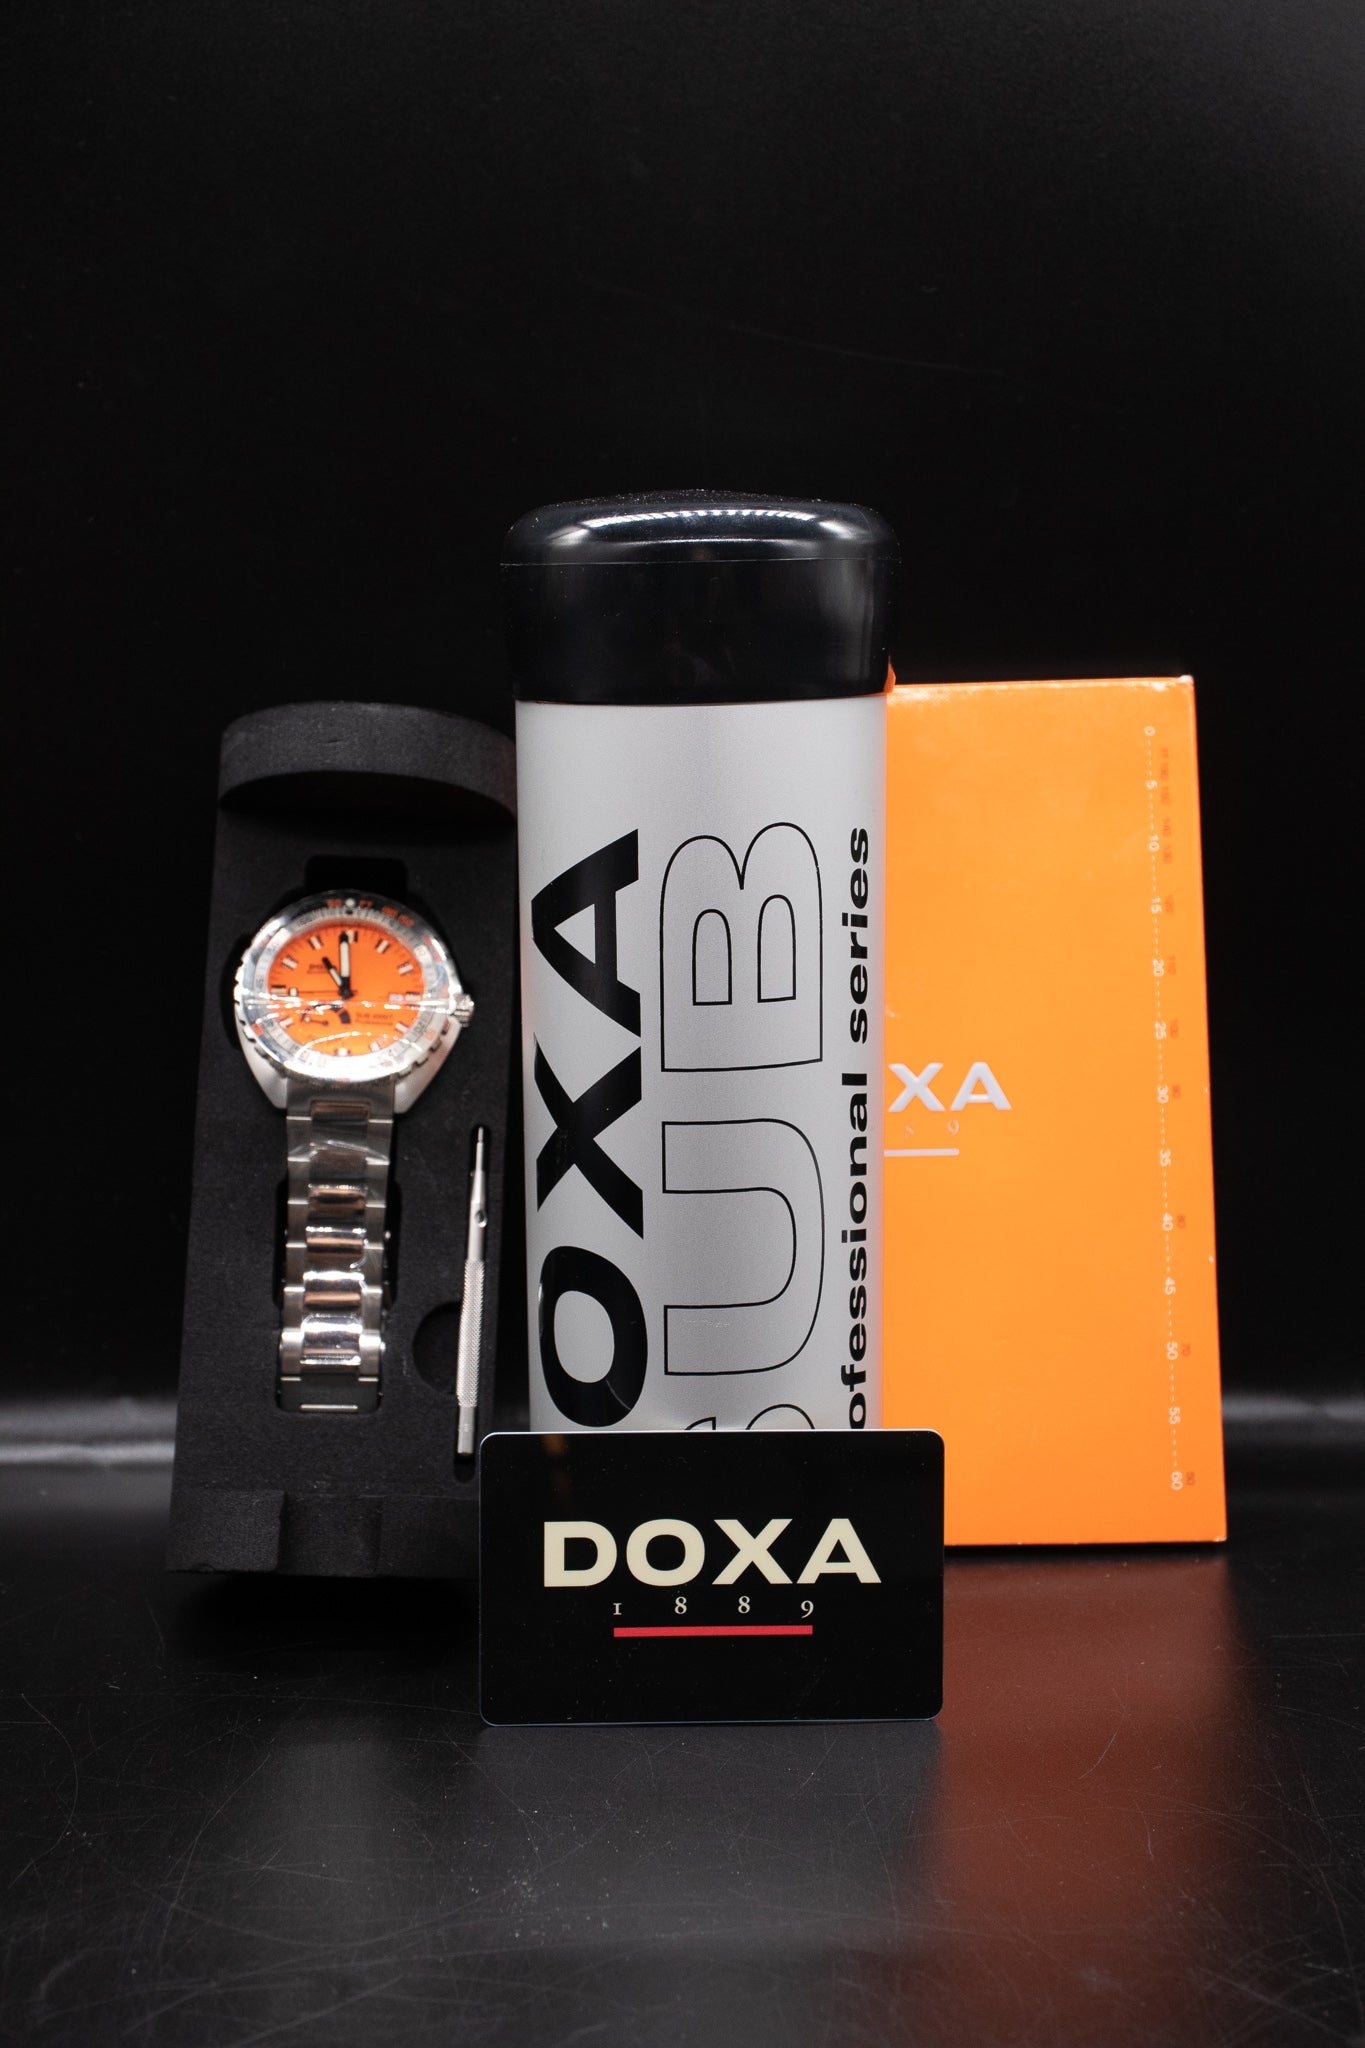 Doxa Sub 4000T Professional